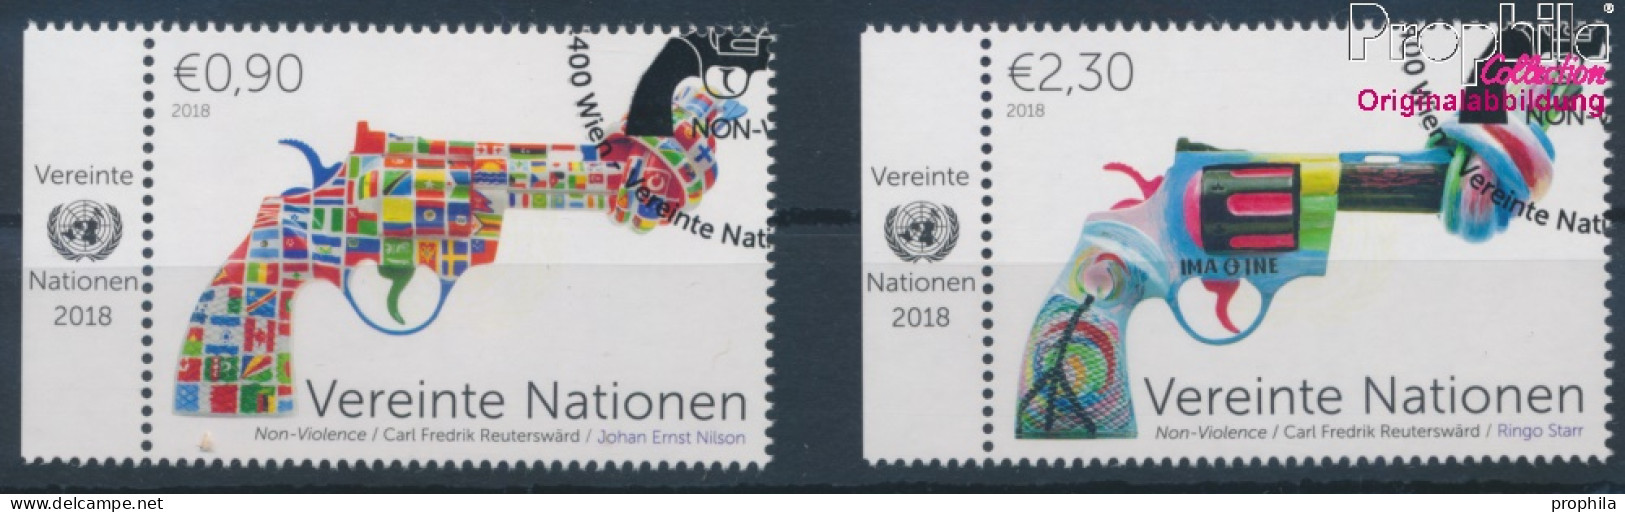 UNO - Wien 1041-1042 (kompl.Ausg.) Gestempelt 2018 Non Violence Project (10216425 - Oblitérés